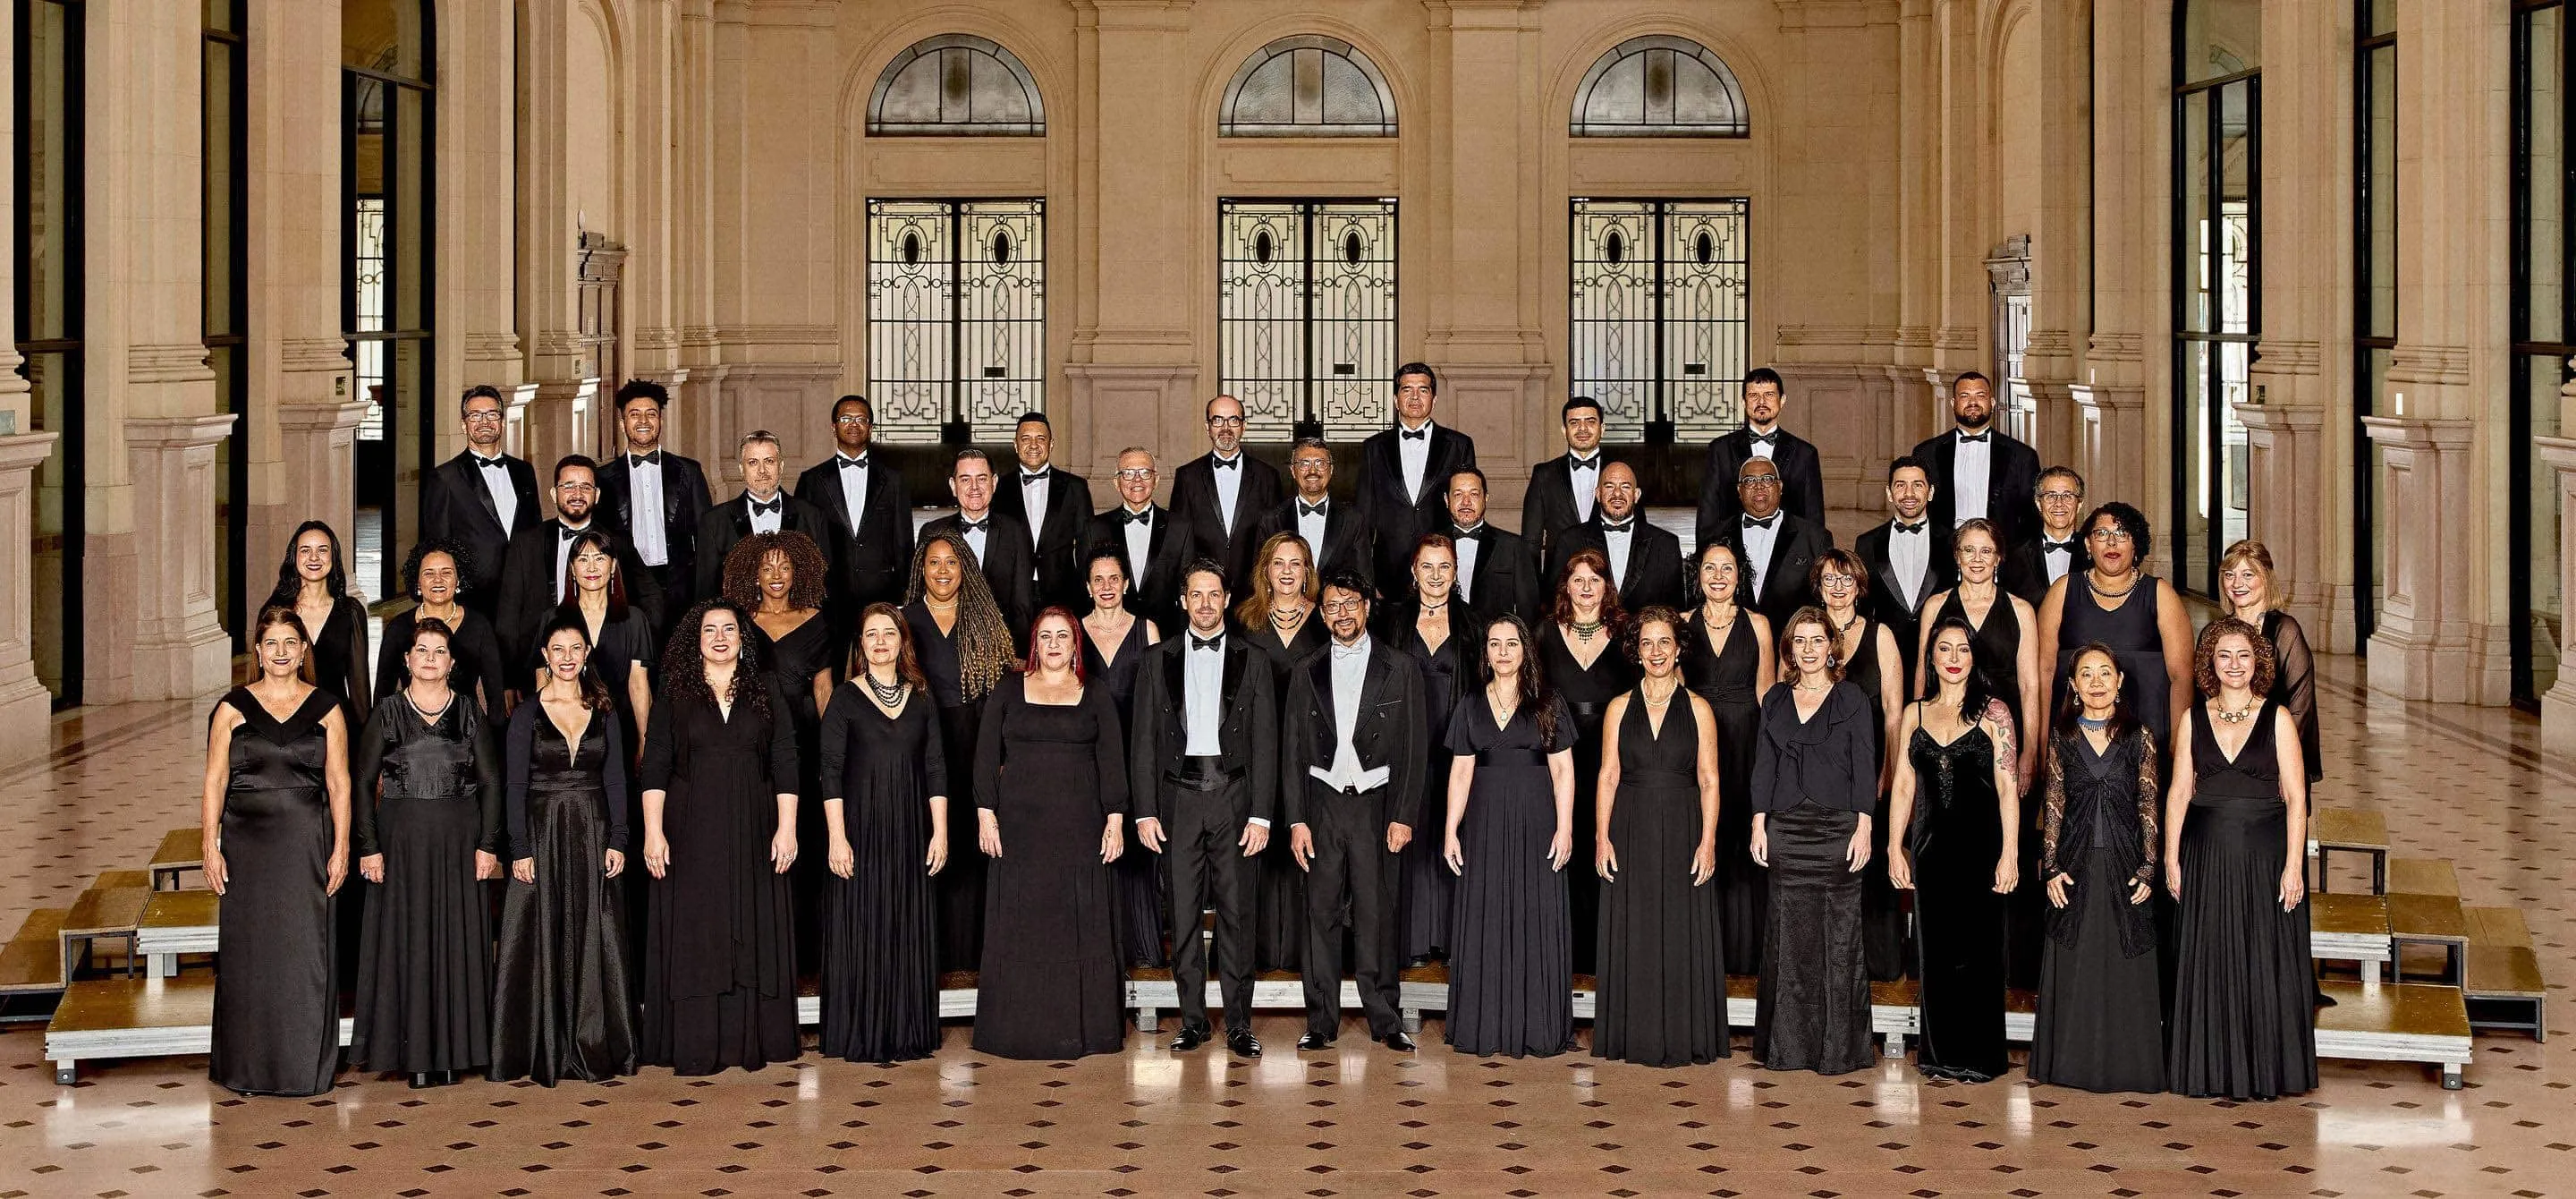 Coro da Osesp, composto por 45 homens e mulheres. Na imagem, eles estão no palco da Sala São Paulo, dispostos em 4 fileiras, e vestidos com trajes de concerto.